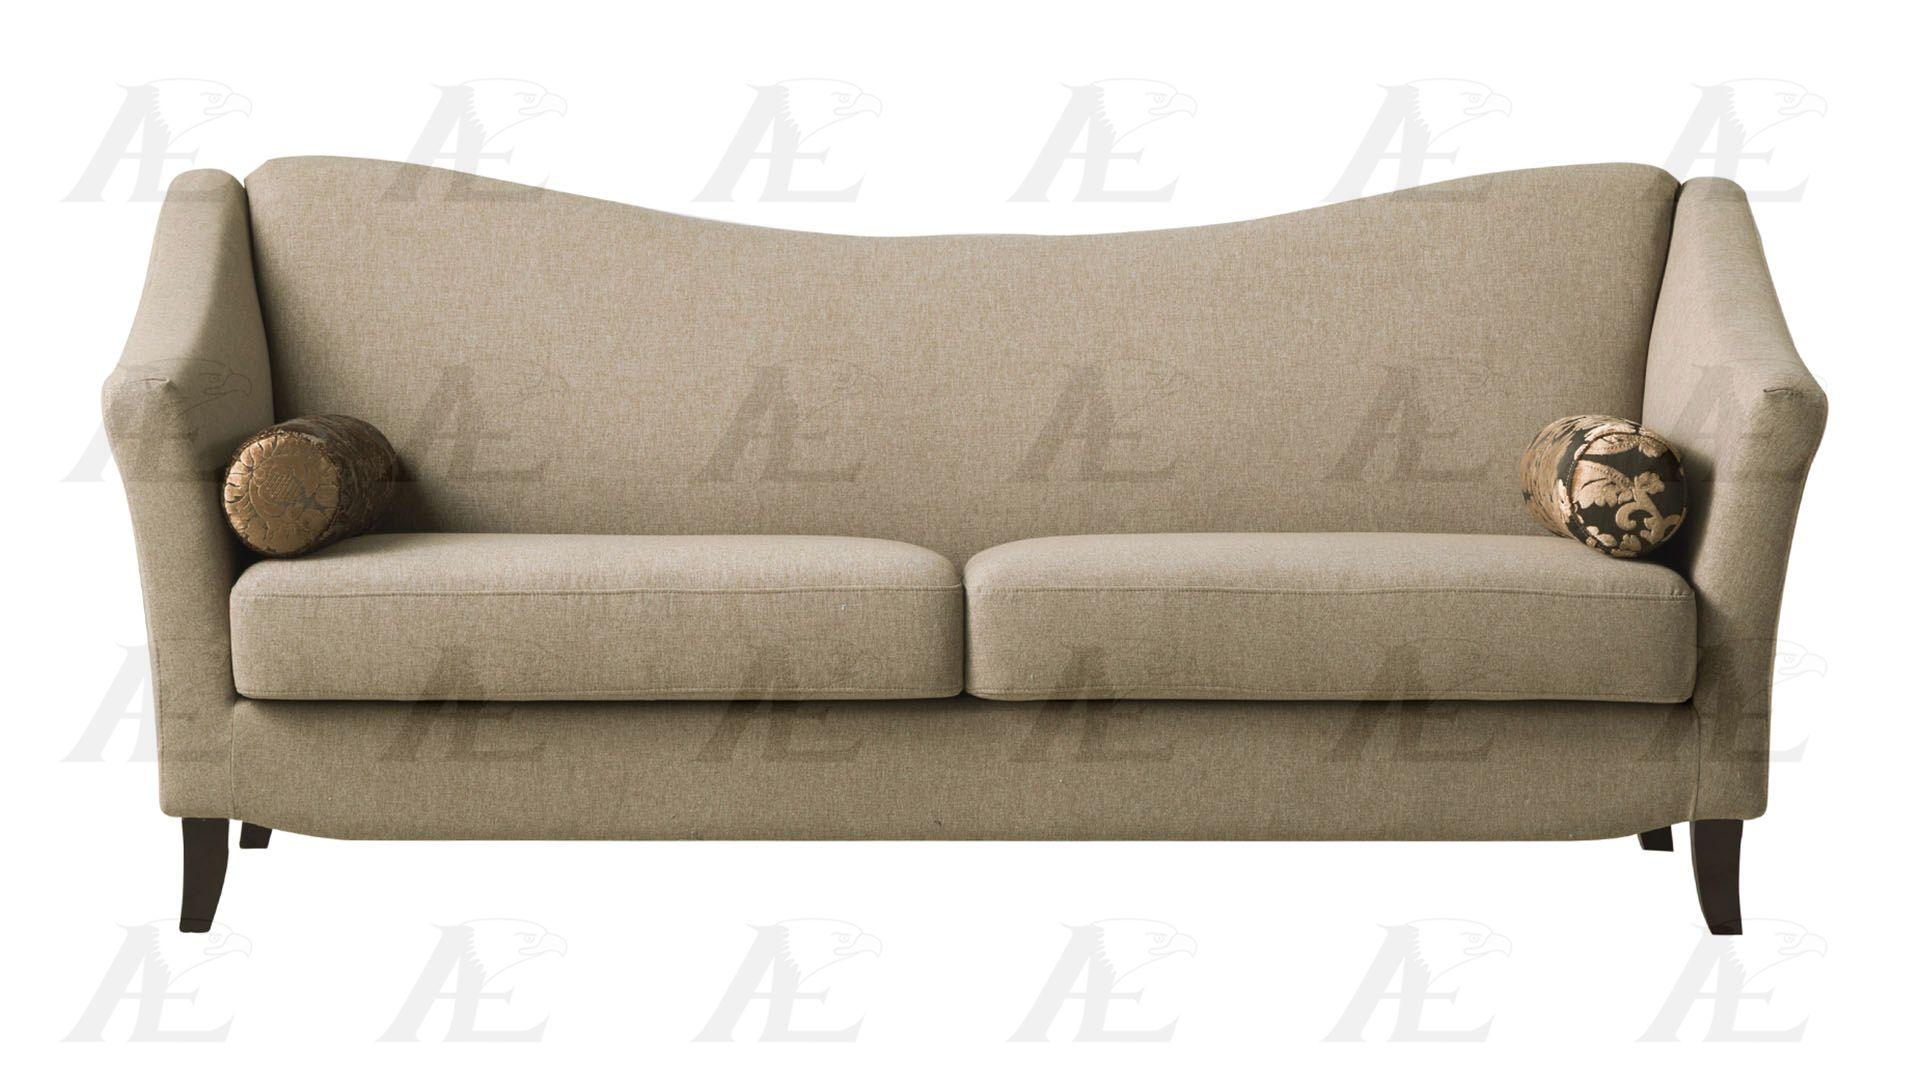 

    
American Eagle Furniture AE2371 Sofa and Loveseat Set Tan AE2371 Set-2
